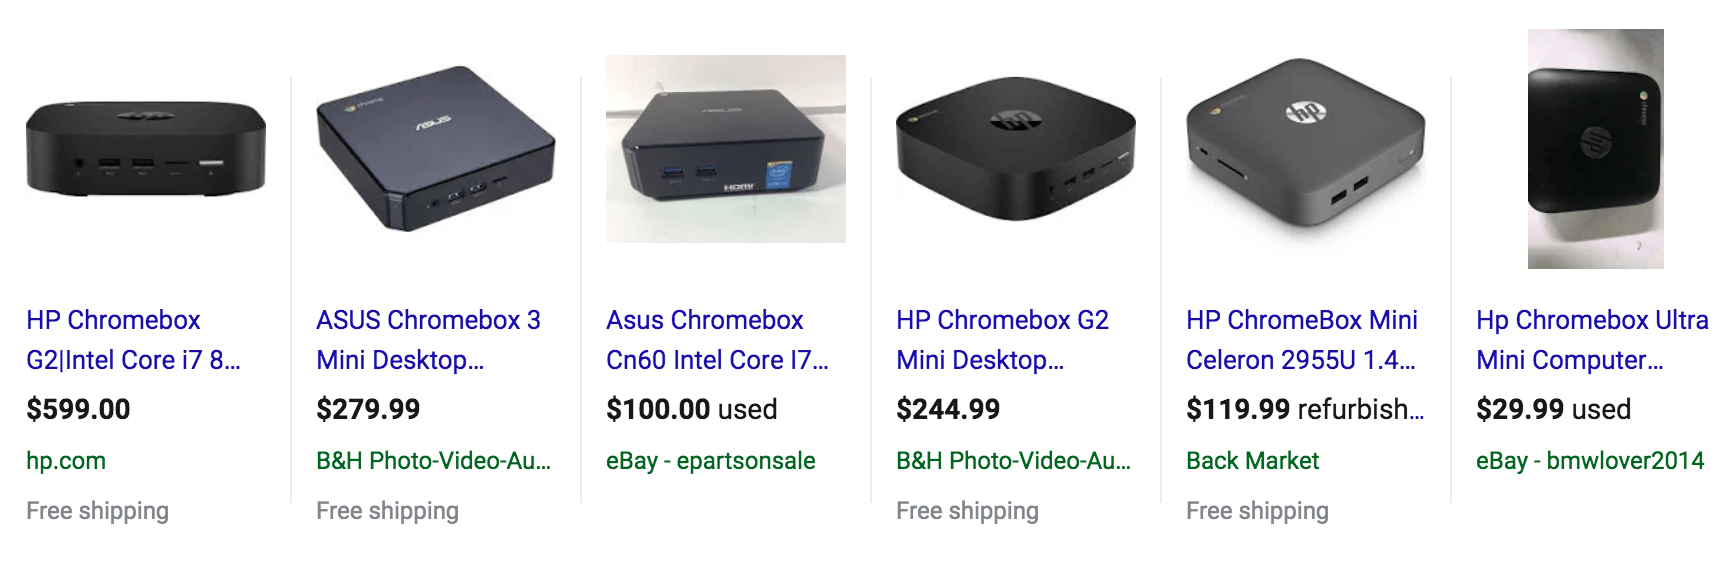 asus chromebox 3 mini desktop pc